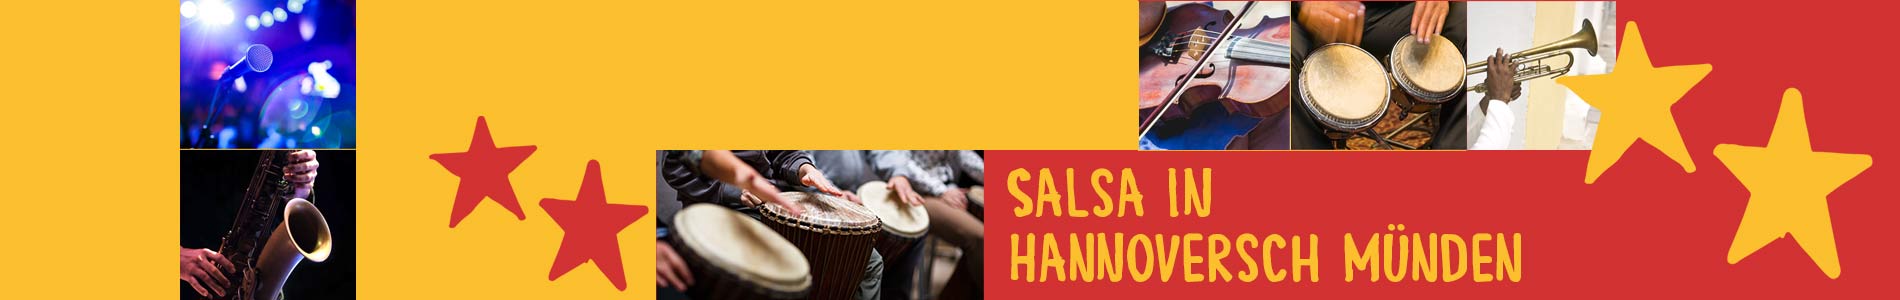 Salsa in Hannover – Salsa lernen und tanzen, Tanzkurse, Partys, Veranstaltungen